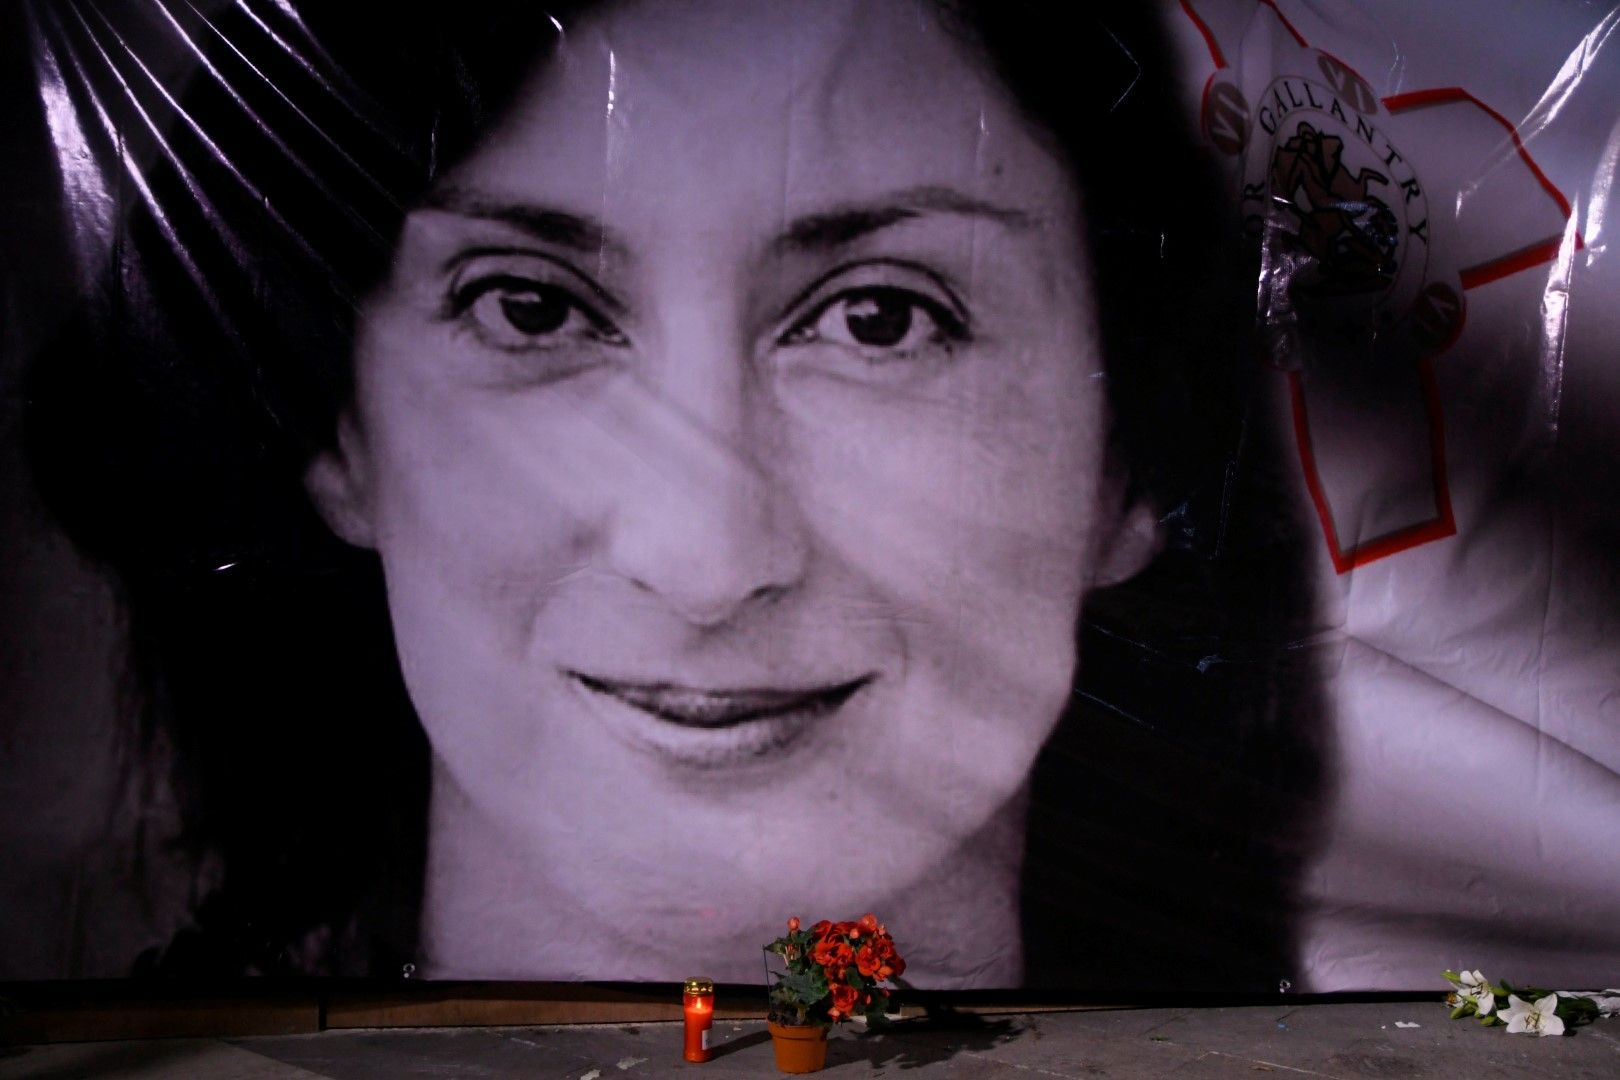 Цвтя и свещи пред портрет на убитата разследваща журналистка Дафне Каруана Галиция по време на бдение пред съдебните зали във Валета, Малта, 16 октомври 2018 г.